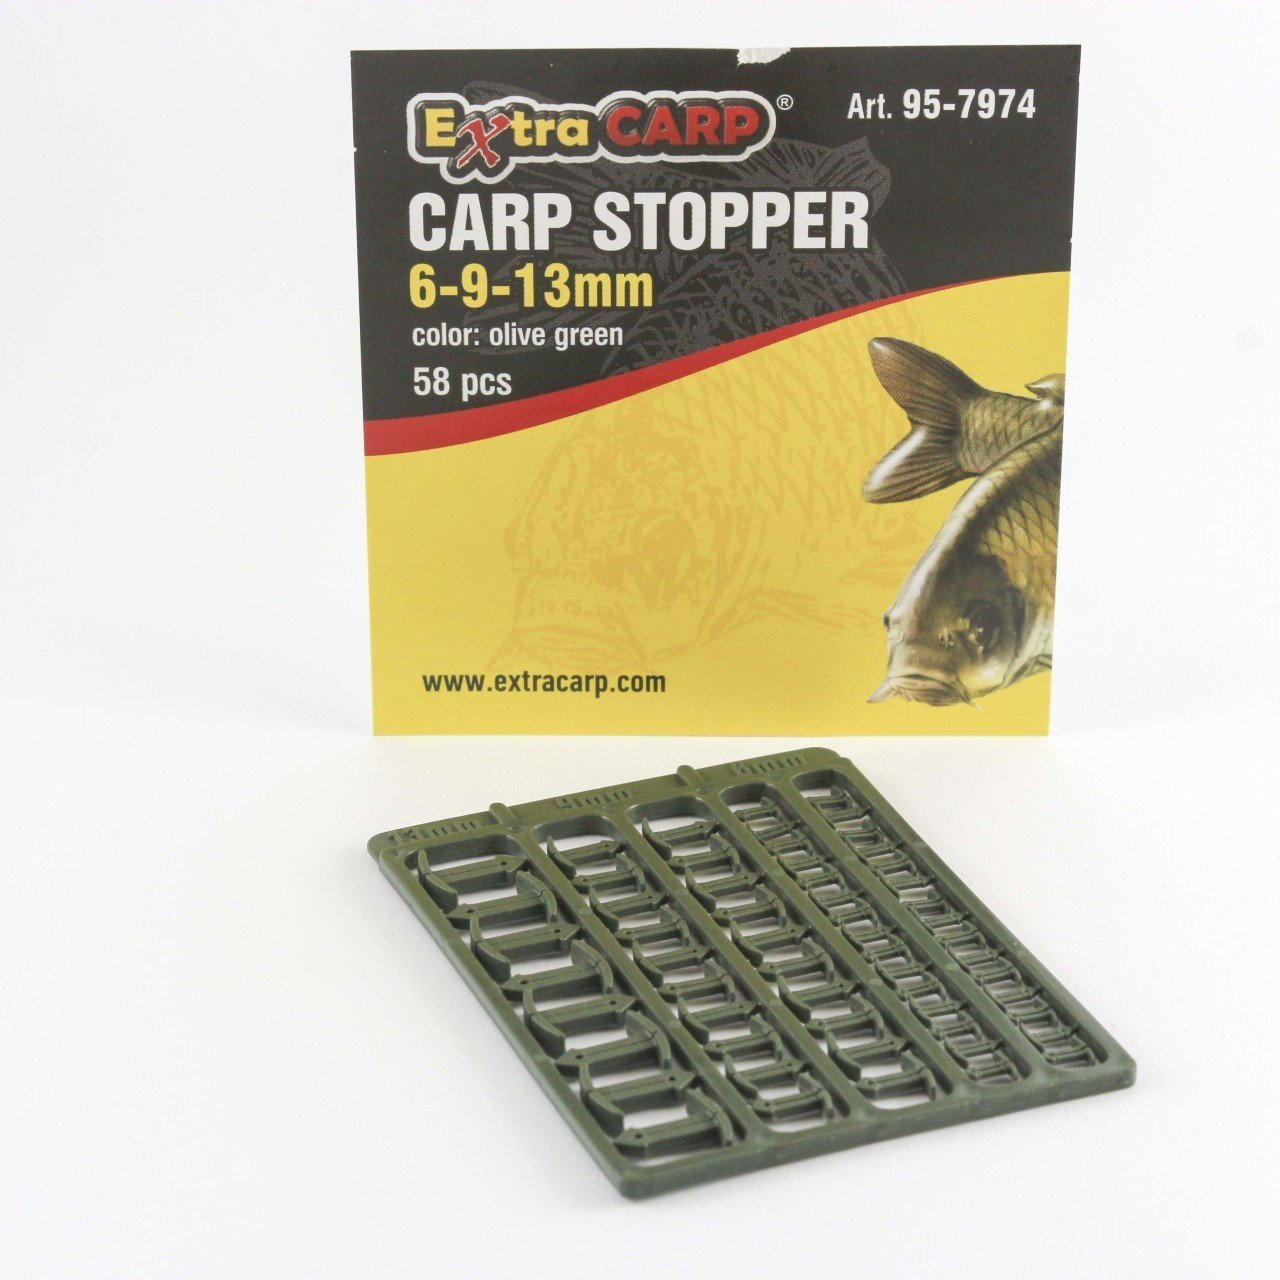 Extra Carp Carp Stopper 6-9-13Mm / 58 Pcs / Olive Green